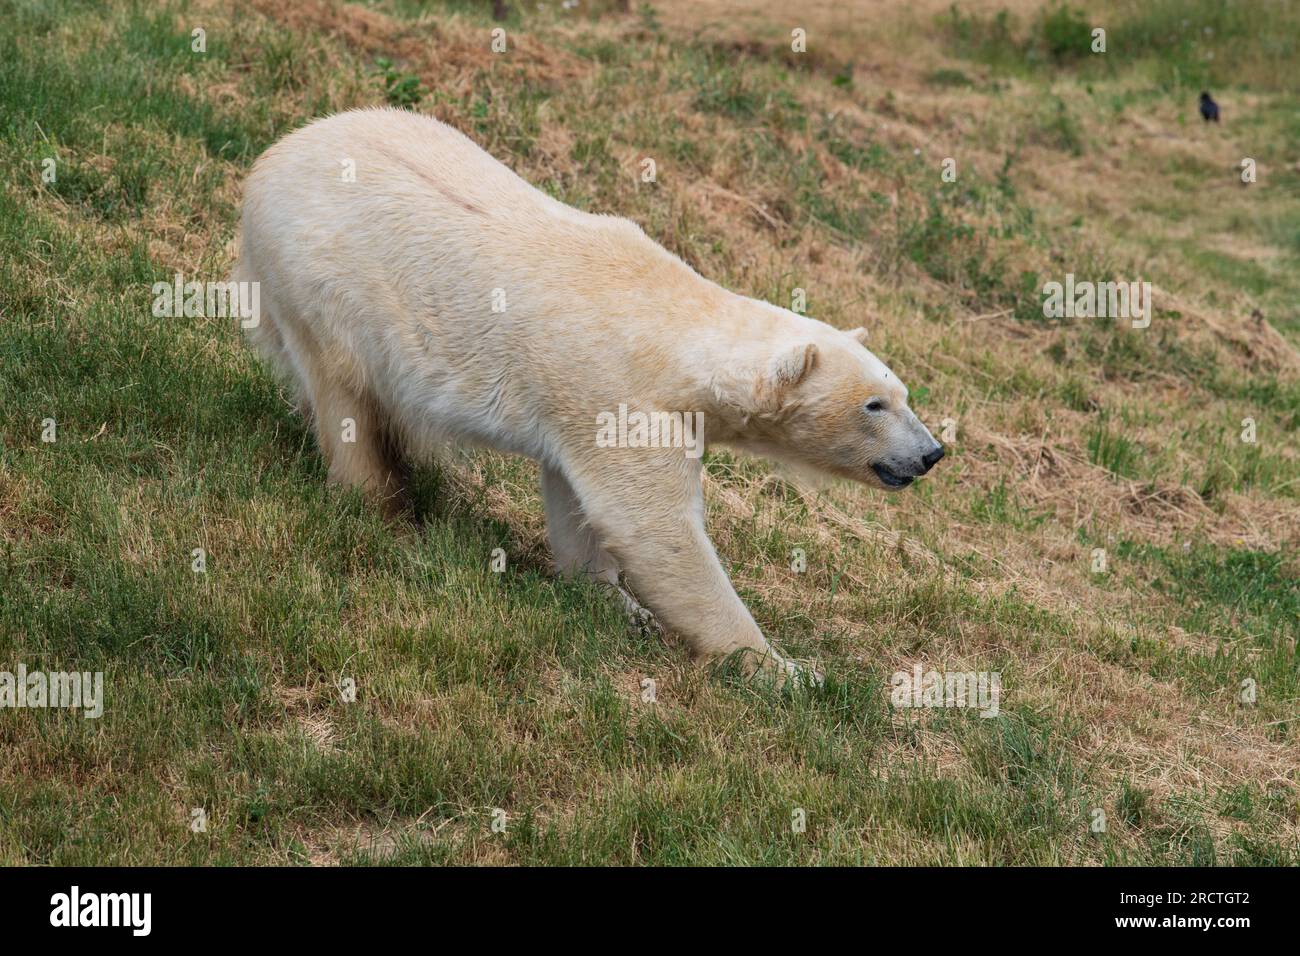 Due orsi polari sono visti allo Yorkshire Wildlife Park come parte del "progetto Polar". L'unico progetto di conservazione degli orsi polari dell'Inghilterra e il più grande all'esterno Foto Stock